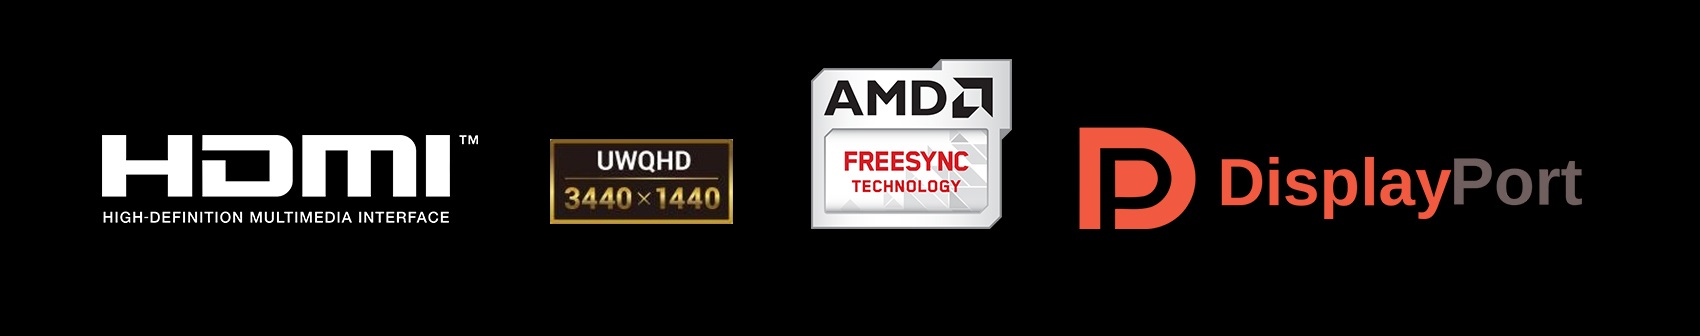 ちらつきやティアリングがない、純粋にゲームに没頭できる環境を。AMD FreeSync™テクノロジーは安定しないゲームプレイやフレームの低下を解消し、どんなフレームレートでも、なめらかでアーチファクトフリーの性能を実現します。